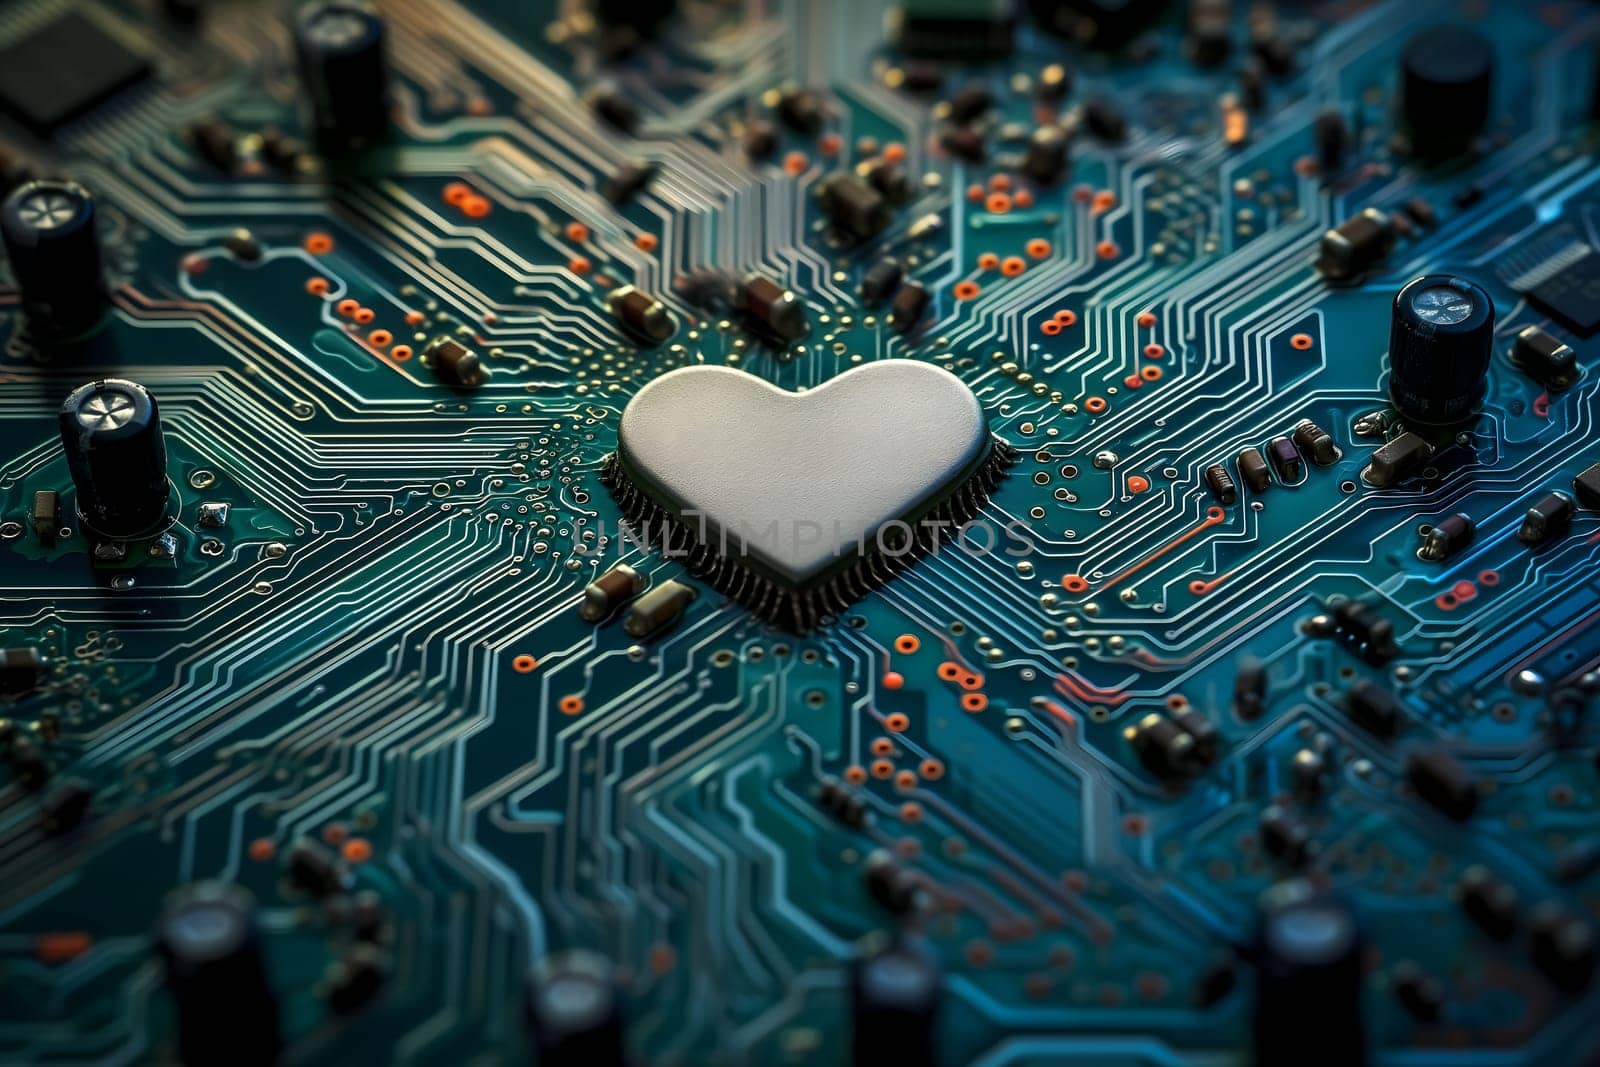 Heart-shaped microchip on green circuit board by z1b